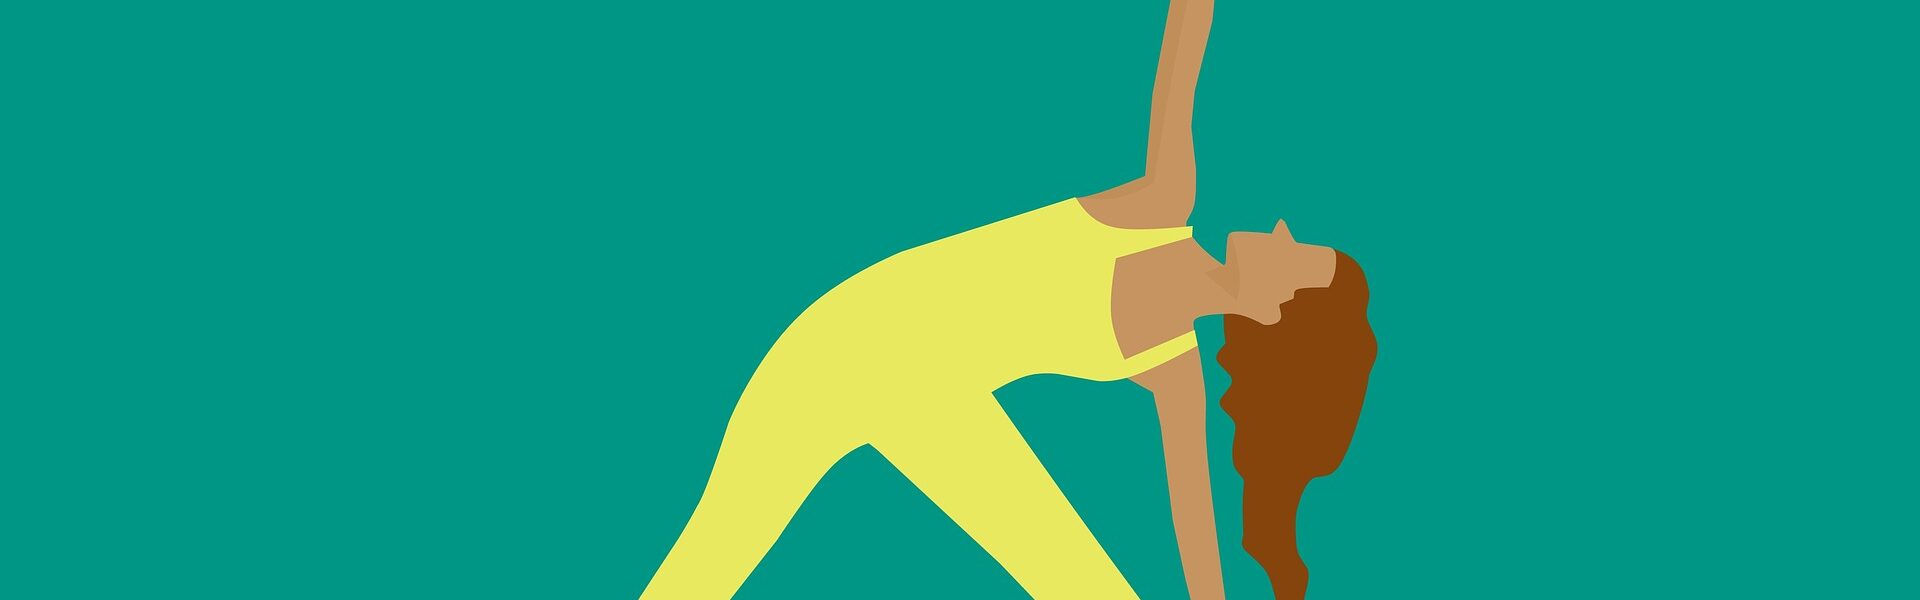 Nie możesz zrzucić wagi? - 7 powodów odchudzanie trening ćwiczenia jogging joga